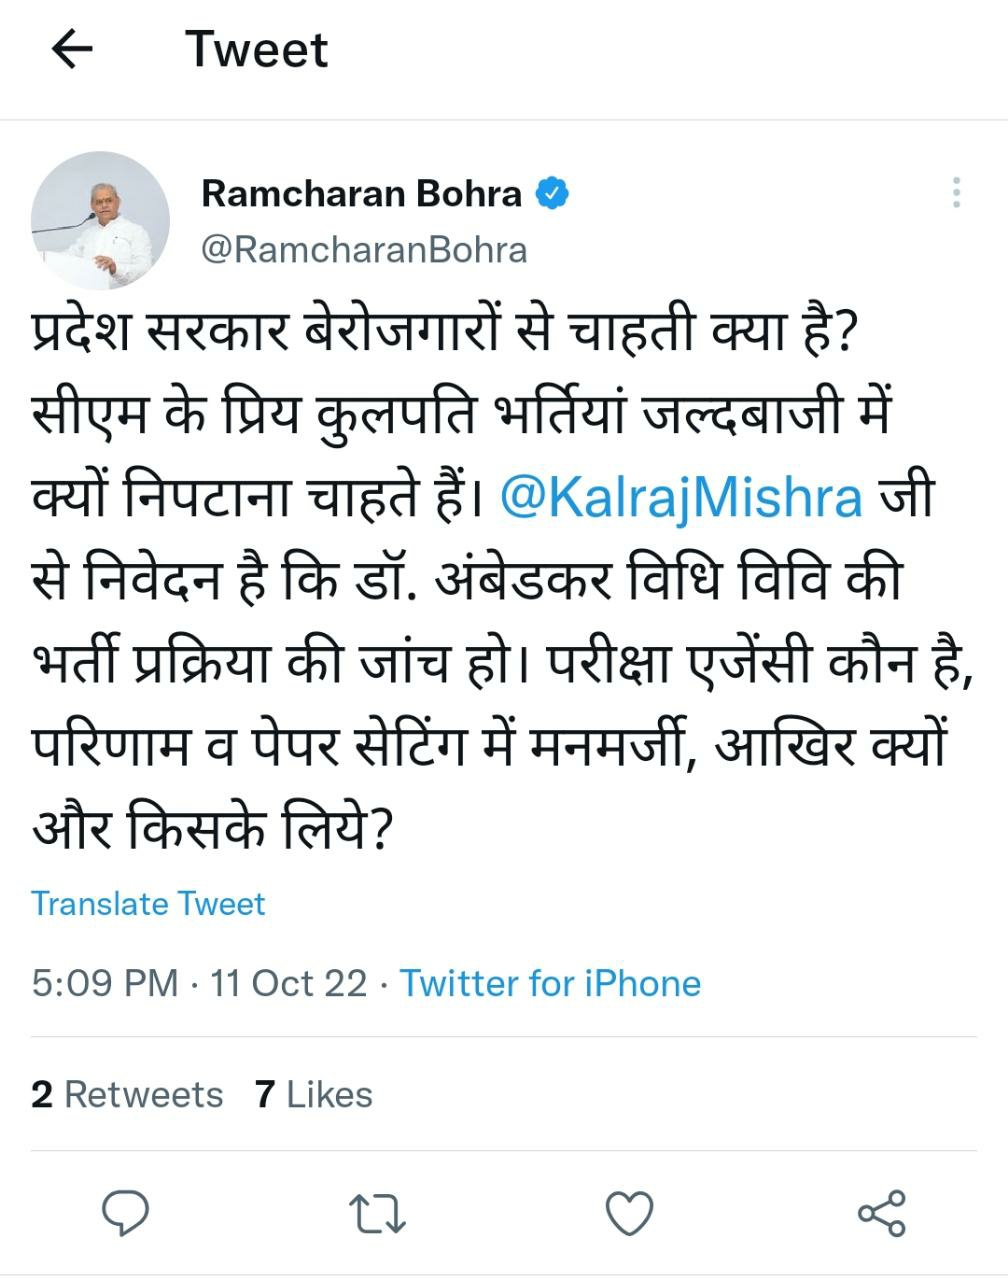 MP Ramcharan Bohra tweeted on social media